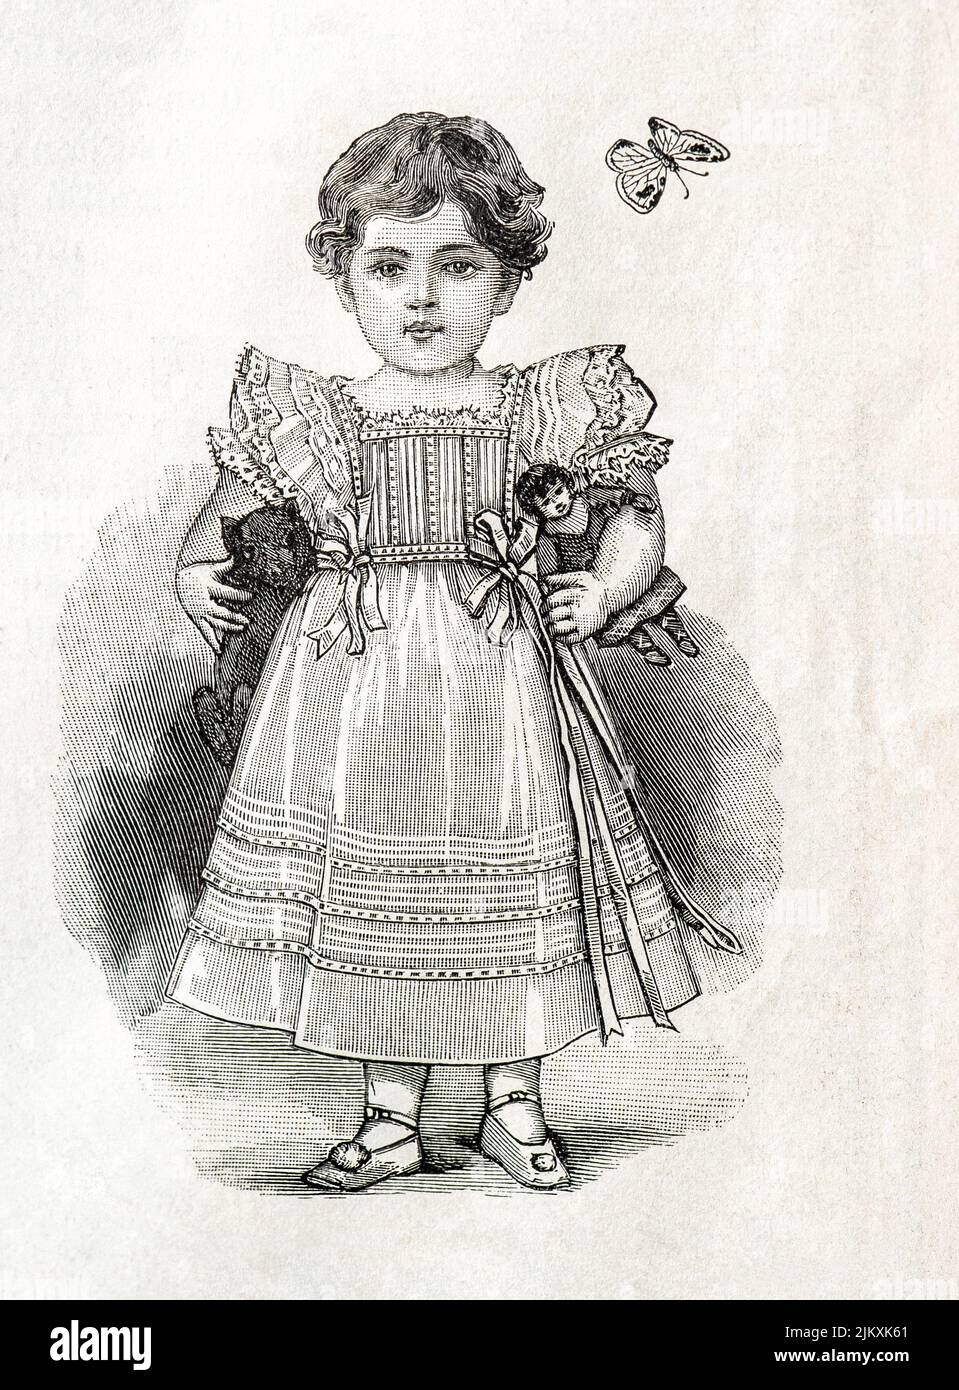 Petite fille portant une robe vintage avec poupée jouet. Gravure antique. La mode Illustree 1901, France, Paris Banque D'Images